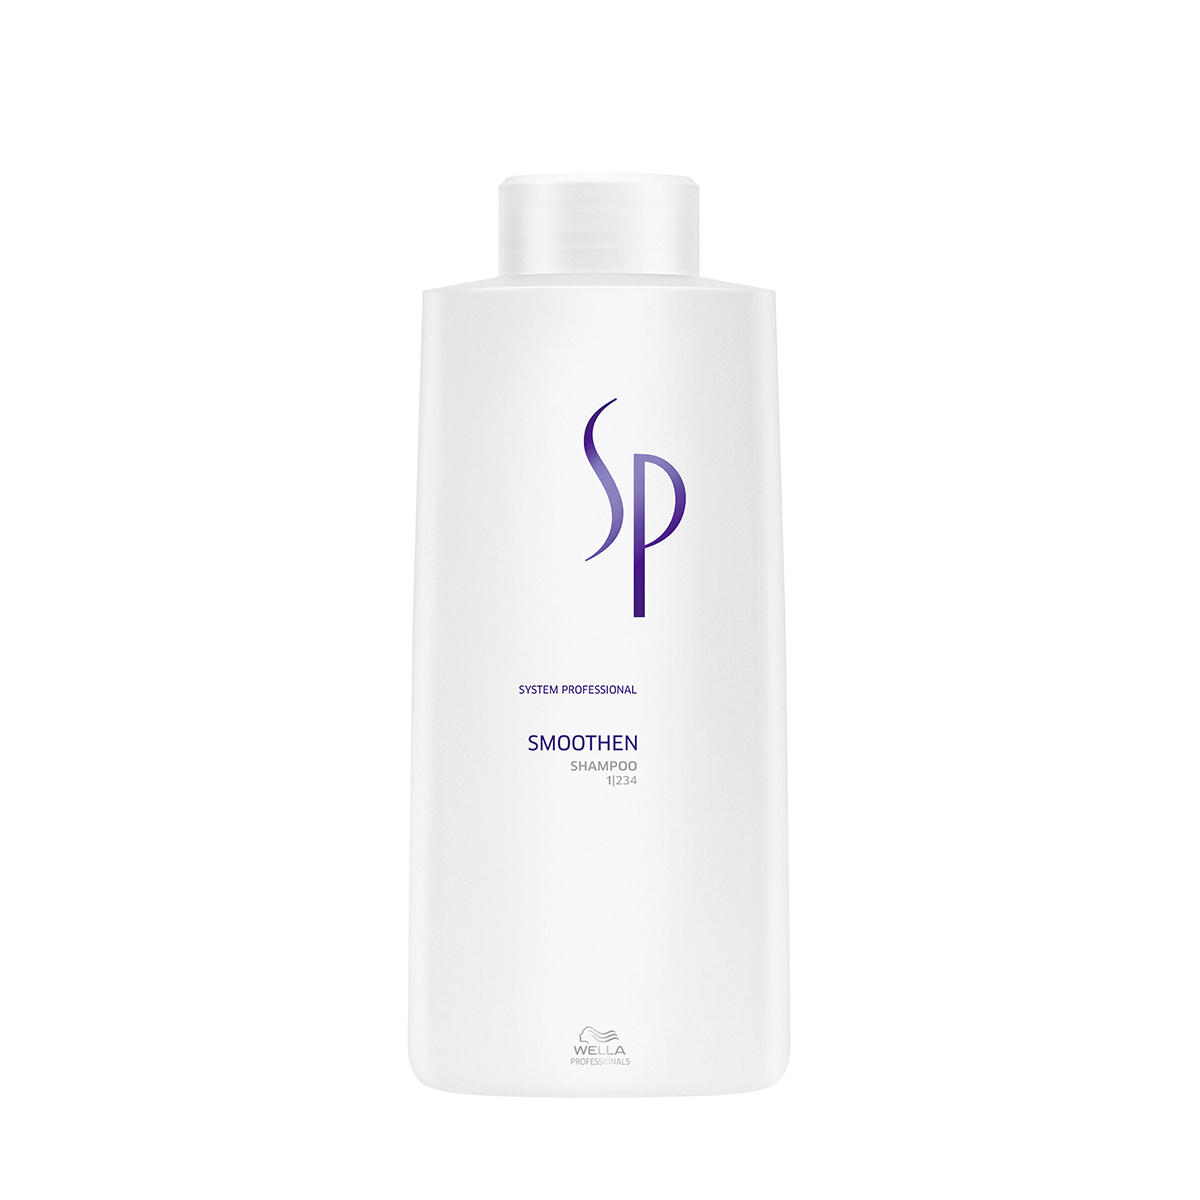 Wella SP Smoothen Shampoo 1 Liter